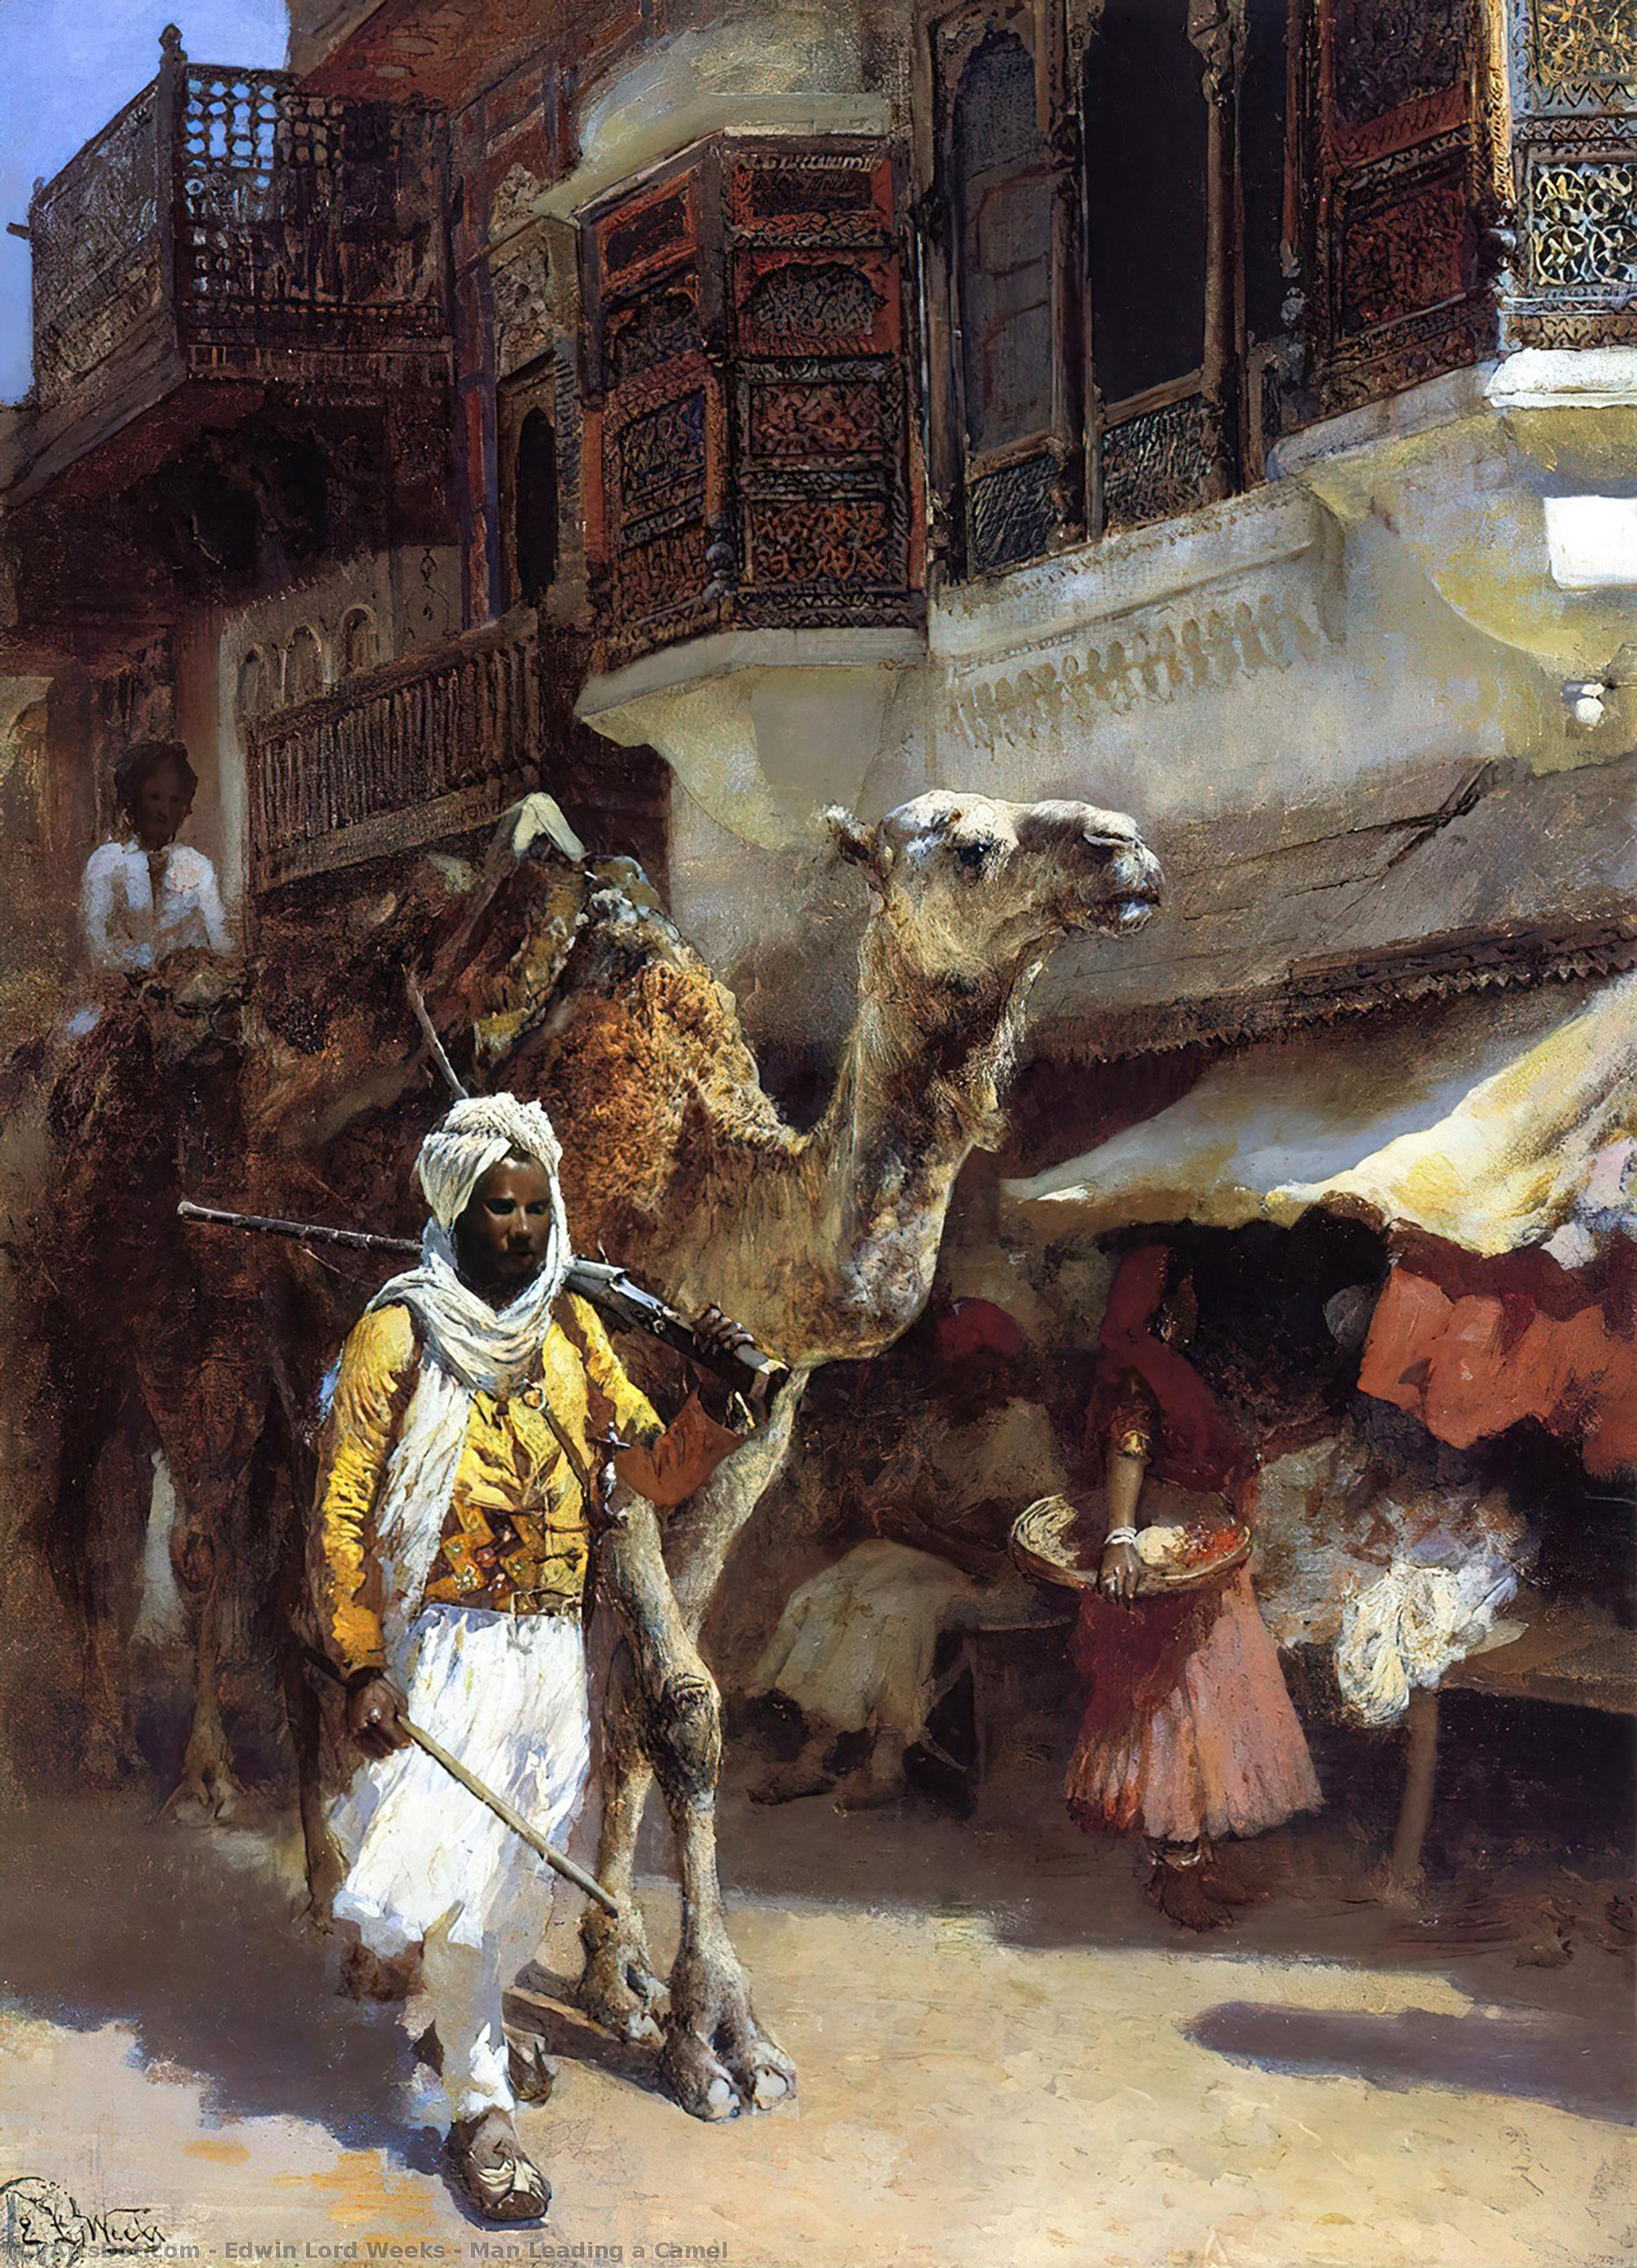 WikiOO.org - Encyclopedia of Fine Arts - Lukisan, Artwork Edwin Lord Weeks - Man Leading a Camel